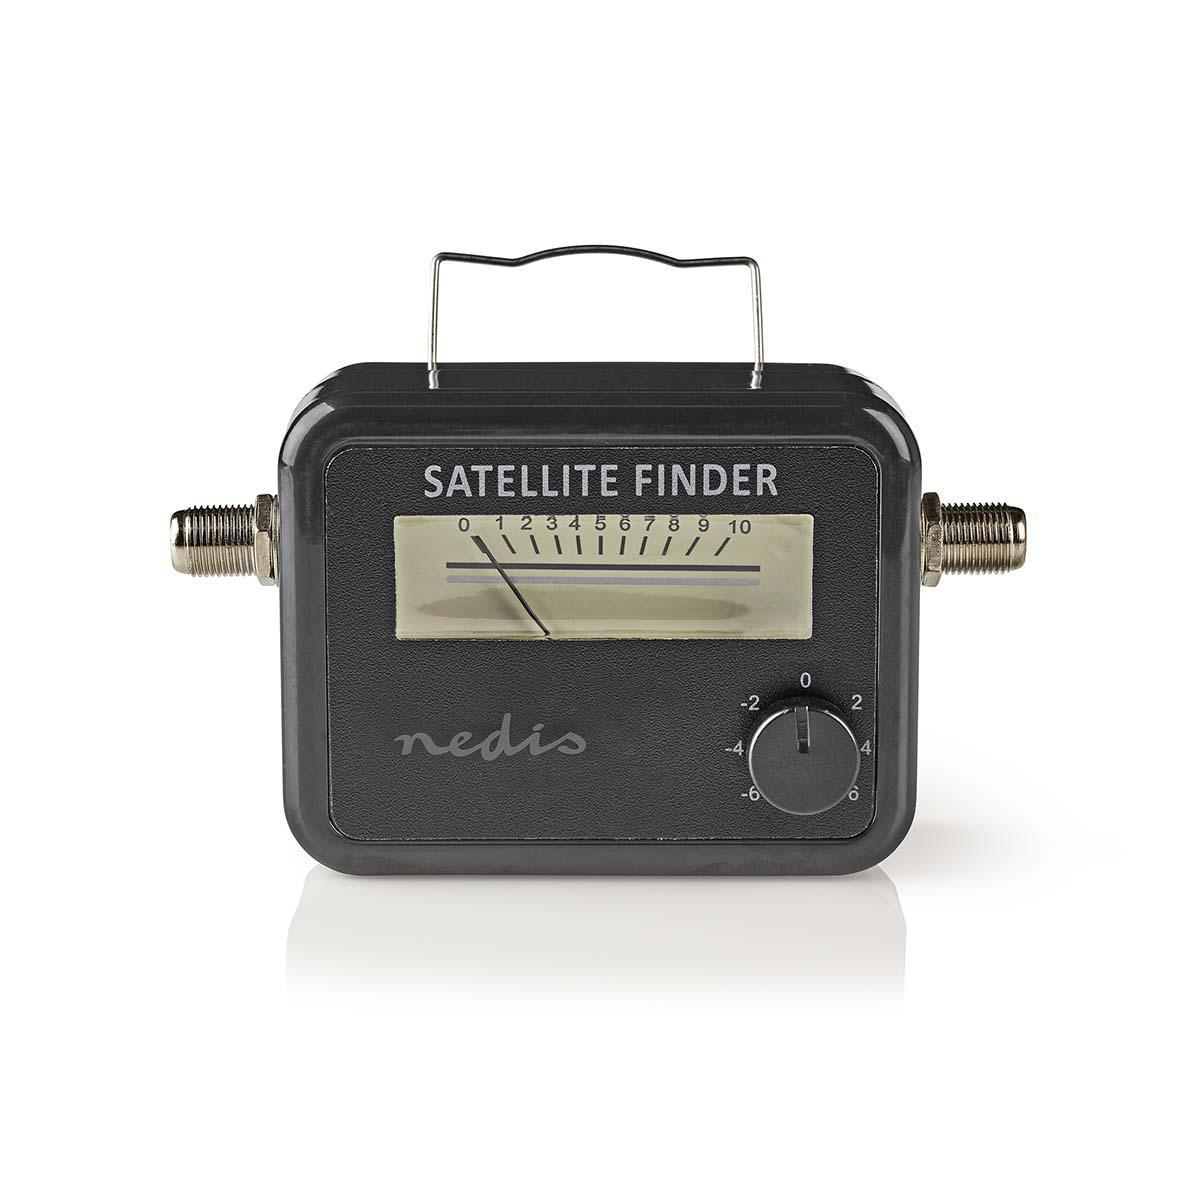 NEDIS Satellitensignalstärke SFIND100BK